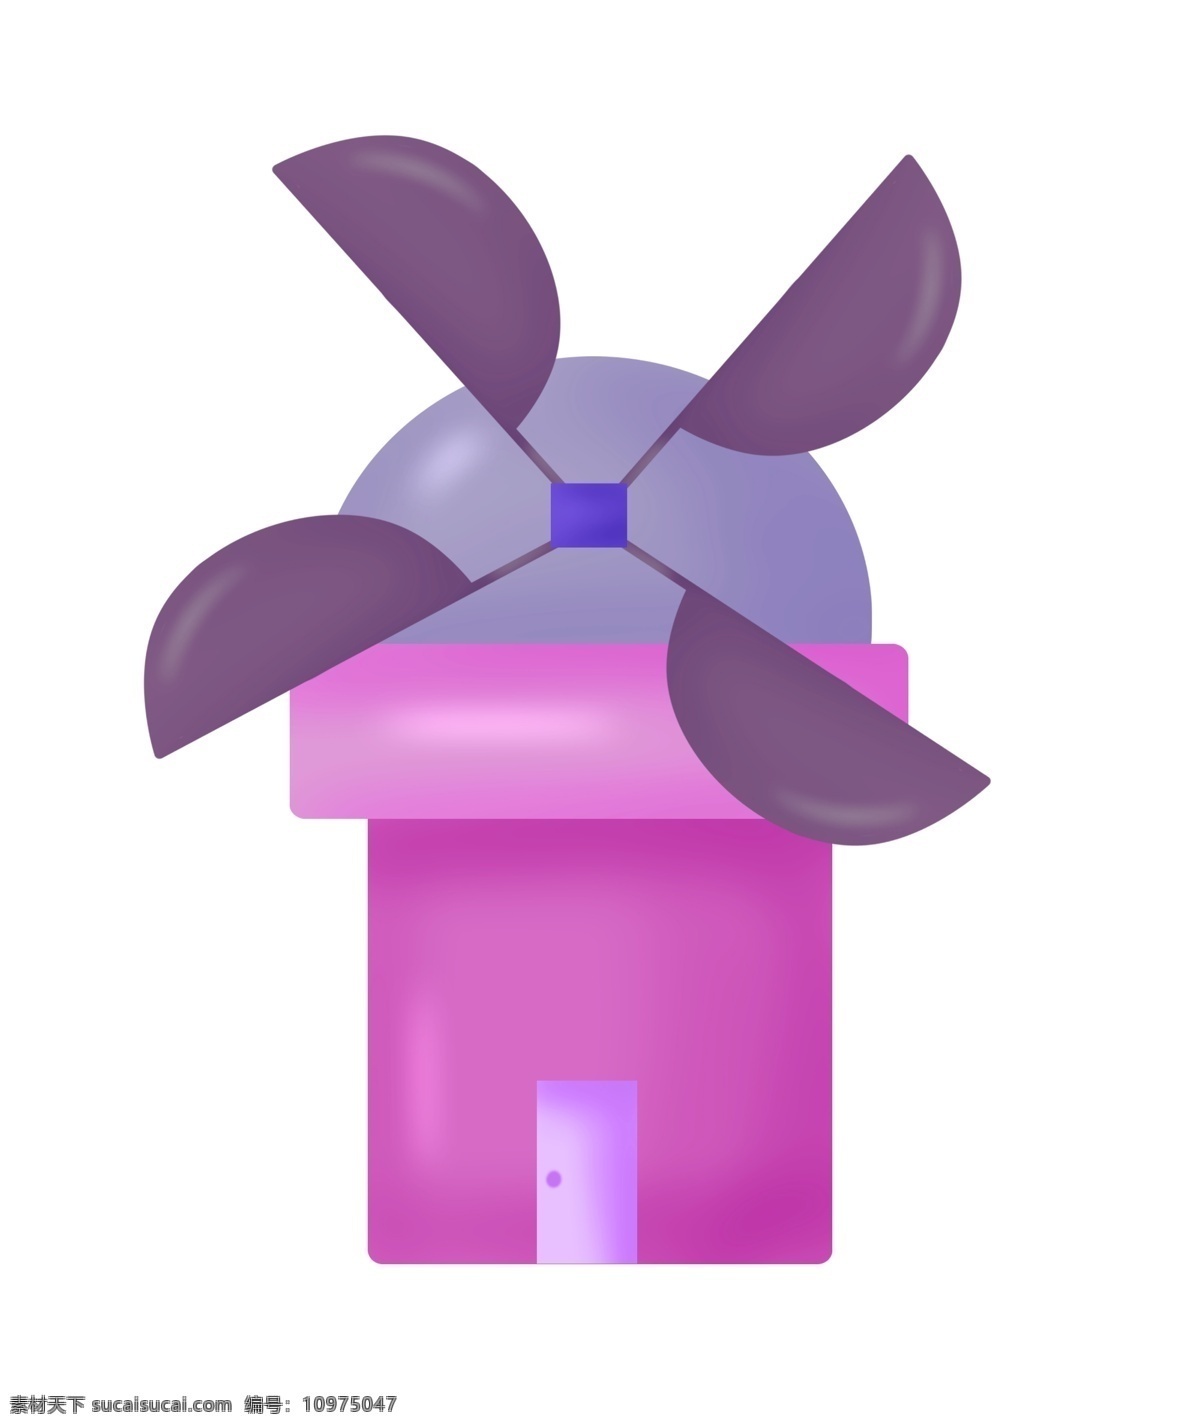 立体 风车 装饰 插画 立体风车 紫色的风车 漂亮的风车 创意风车 精美风车 卡通风车 风车建筑